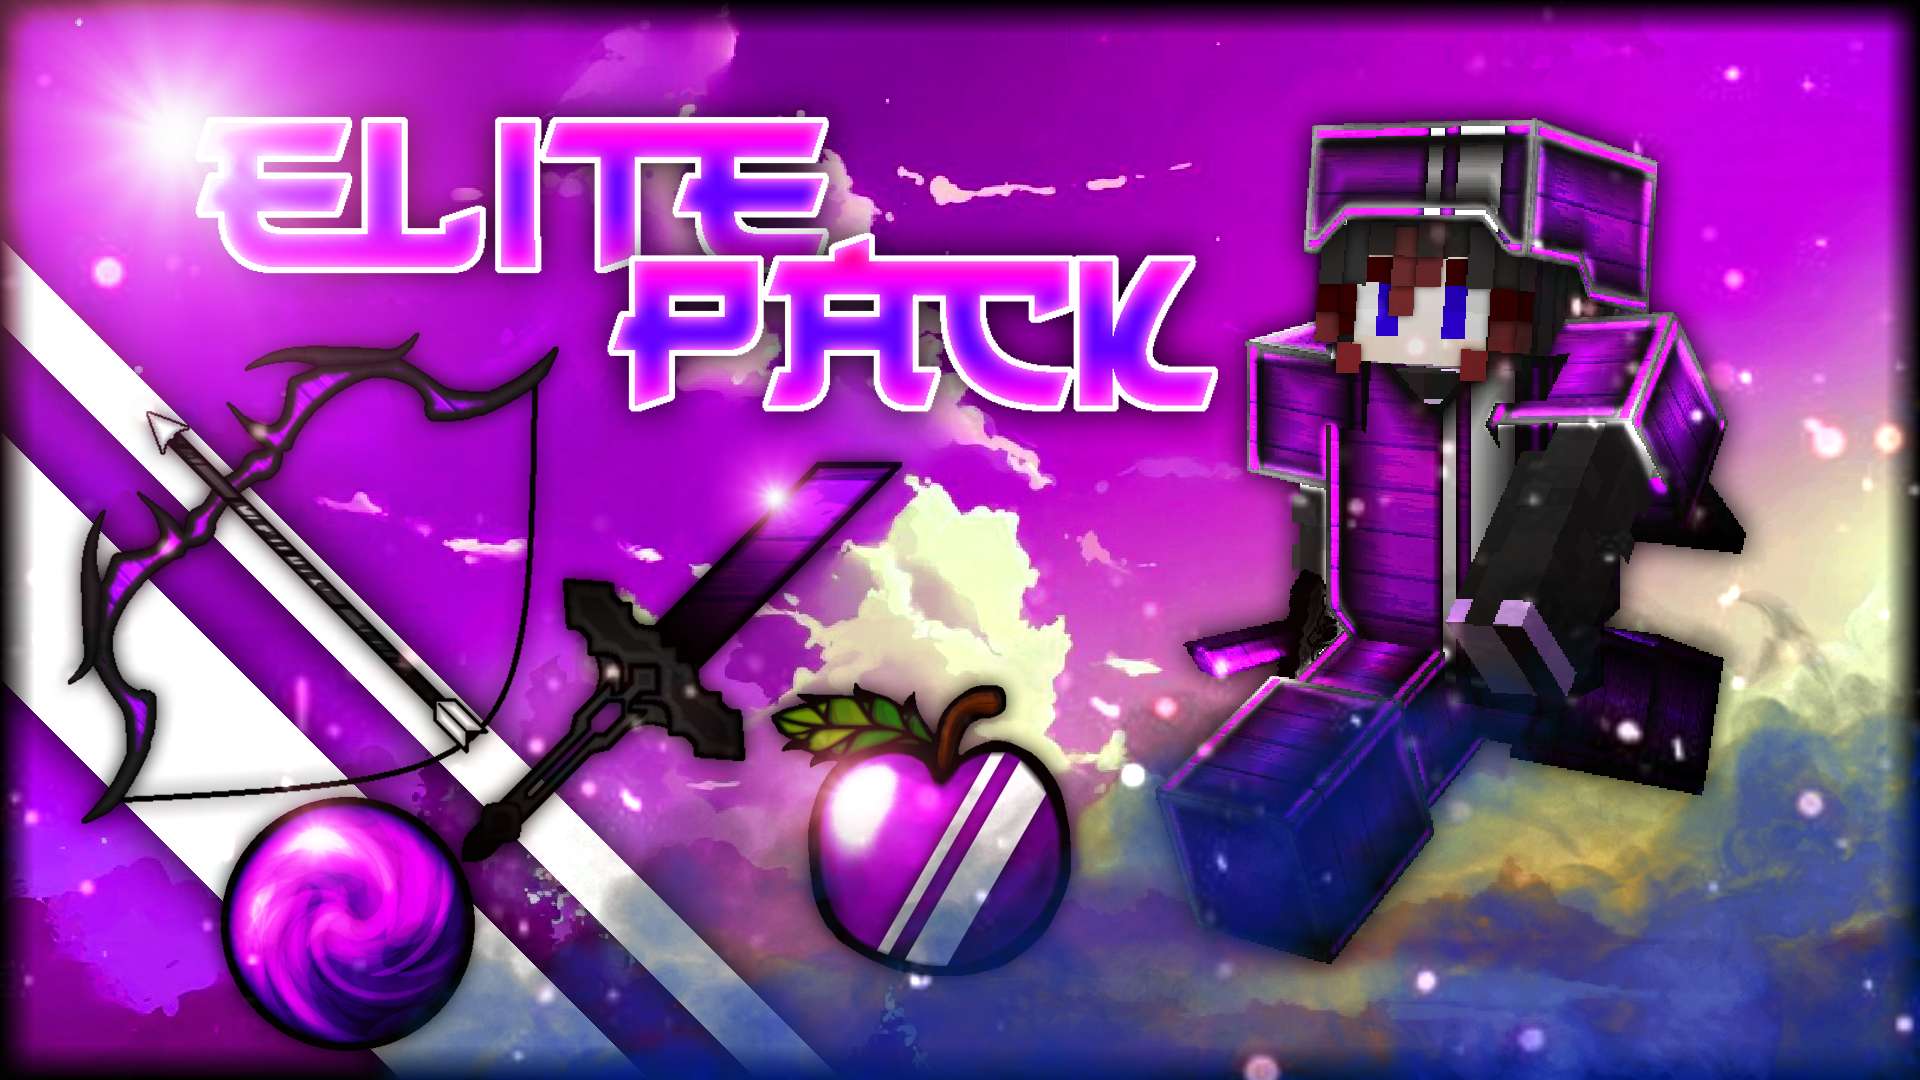 🔥 Elite Pack - Purple 512 by Moniia on PvPRP